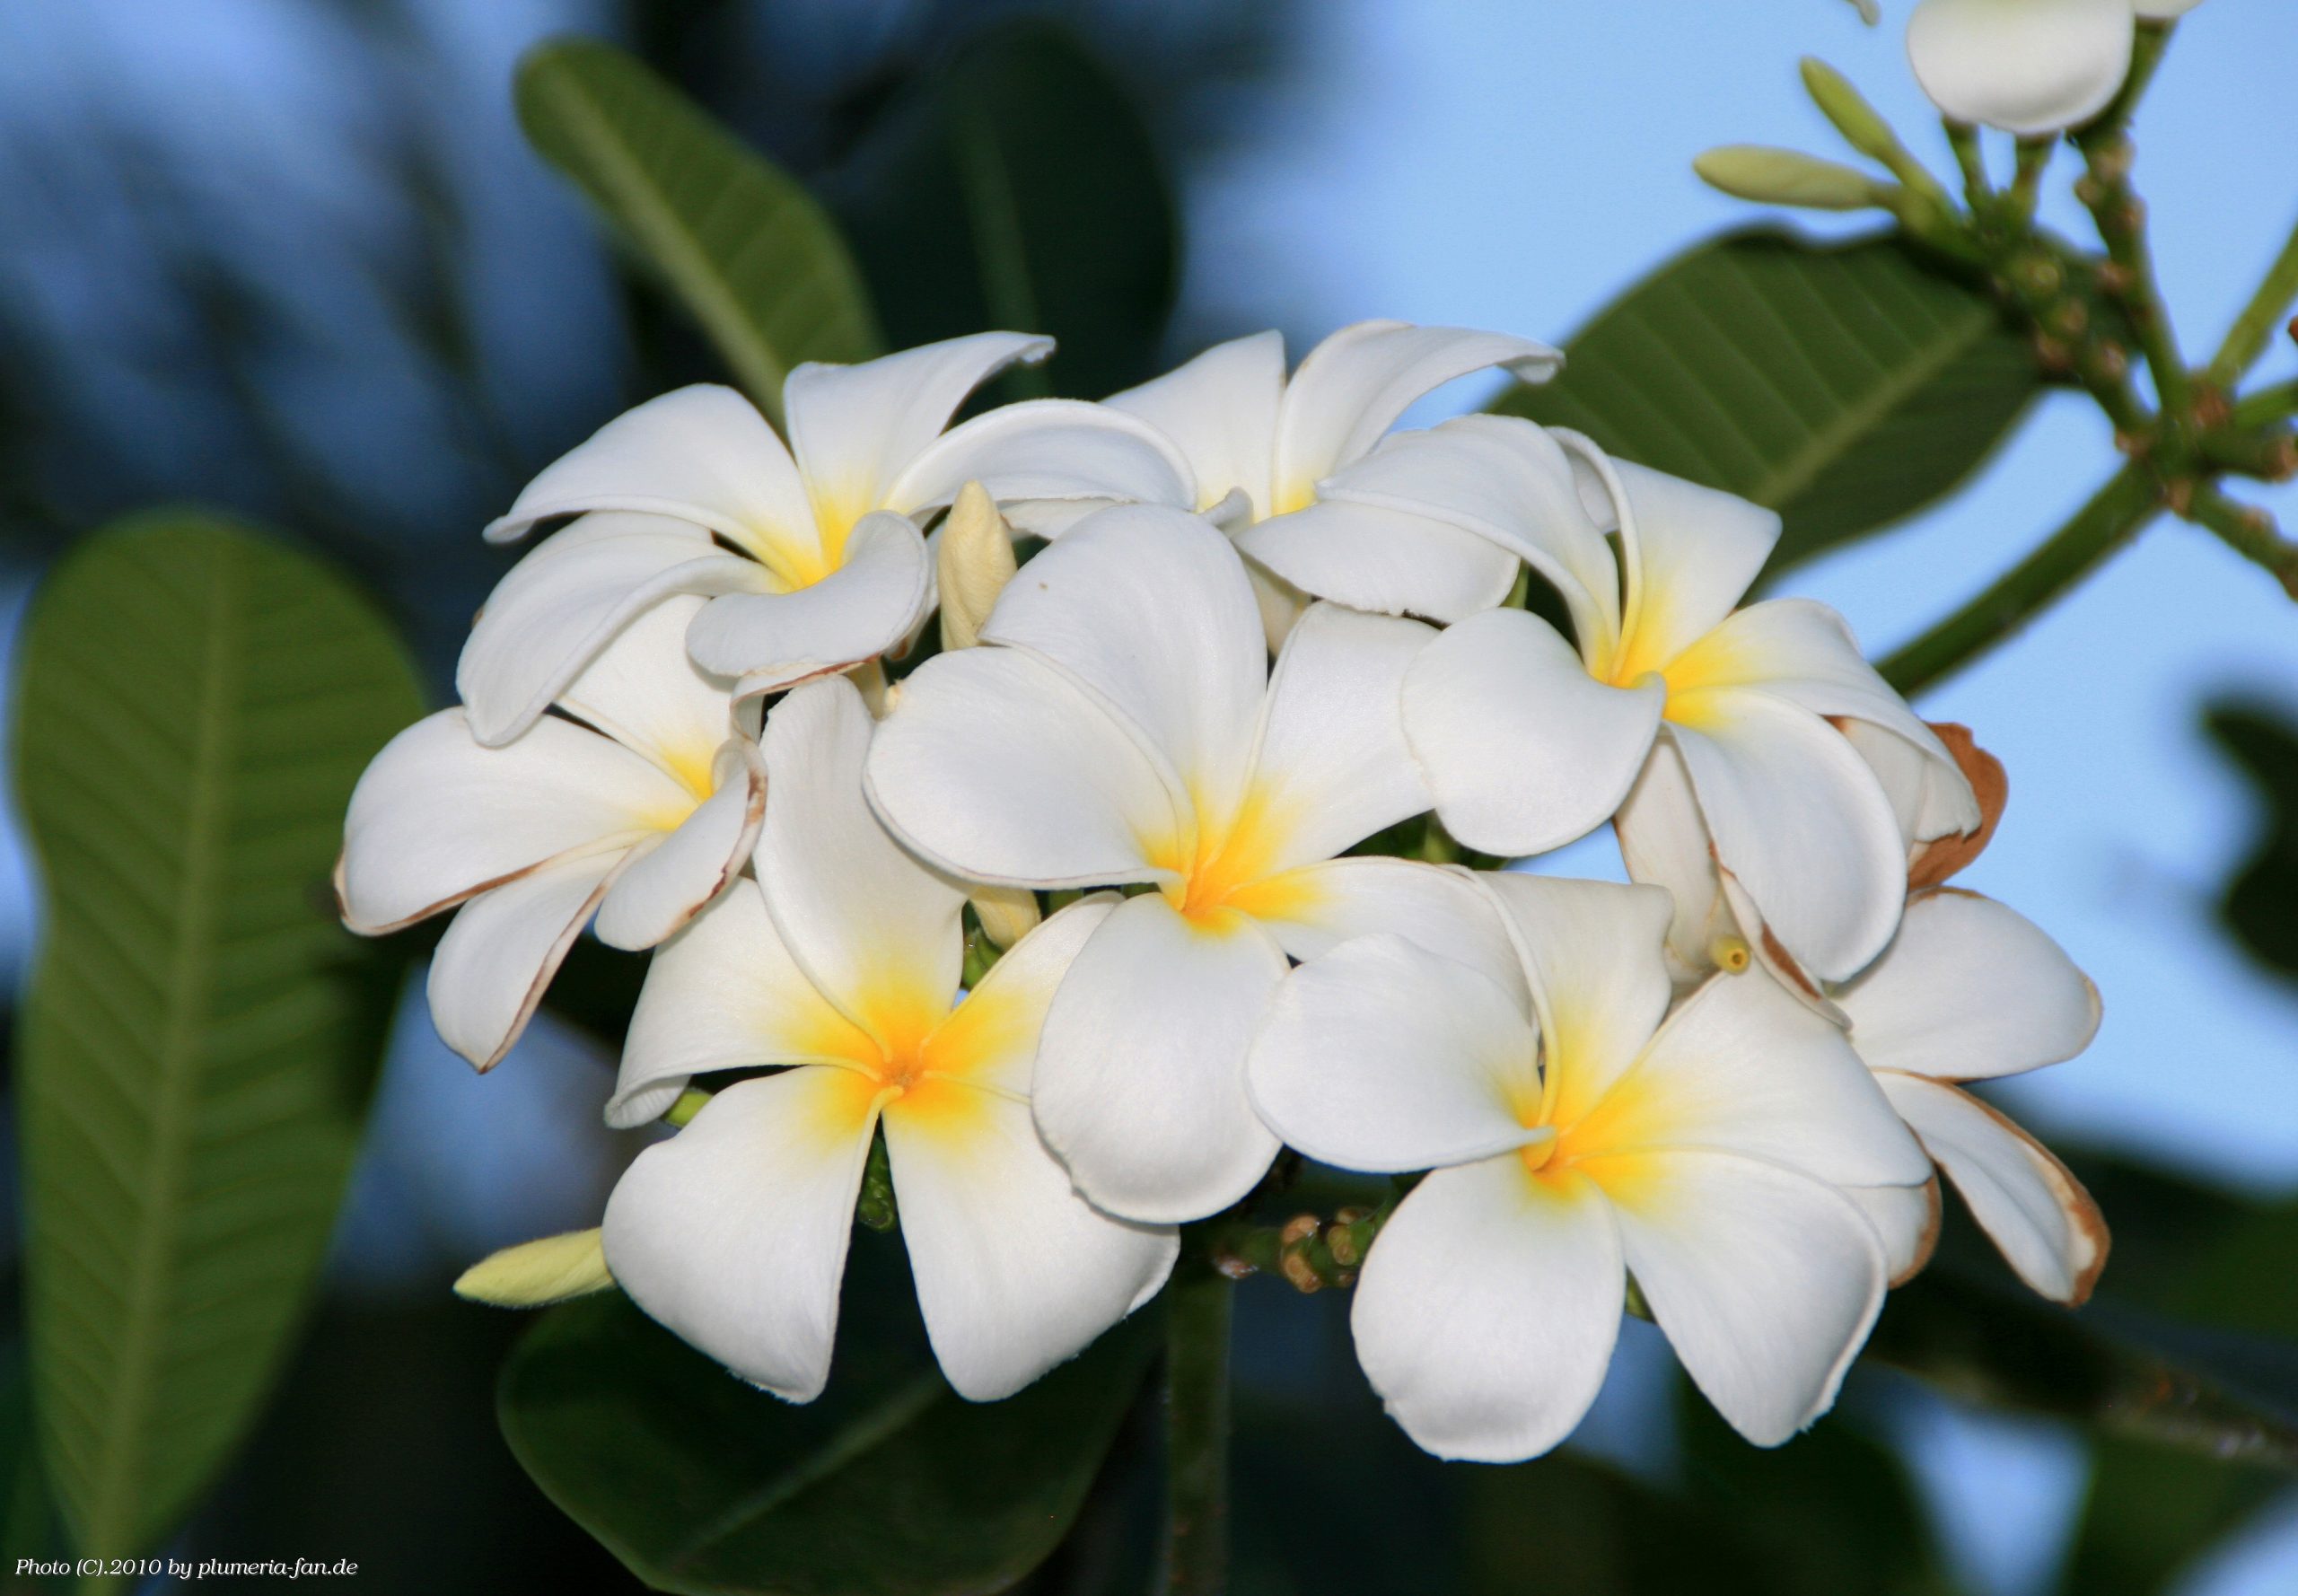 Plumeria obtusa "Singapore White"